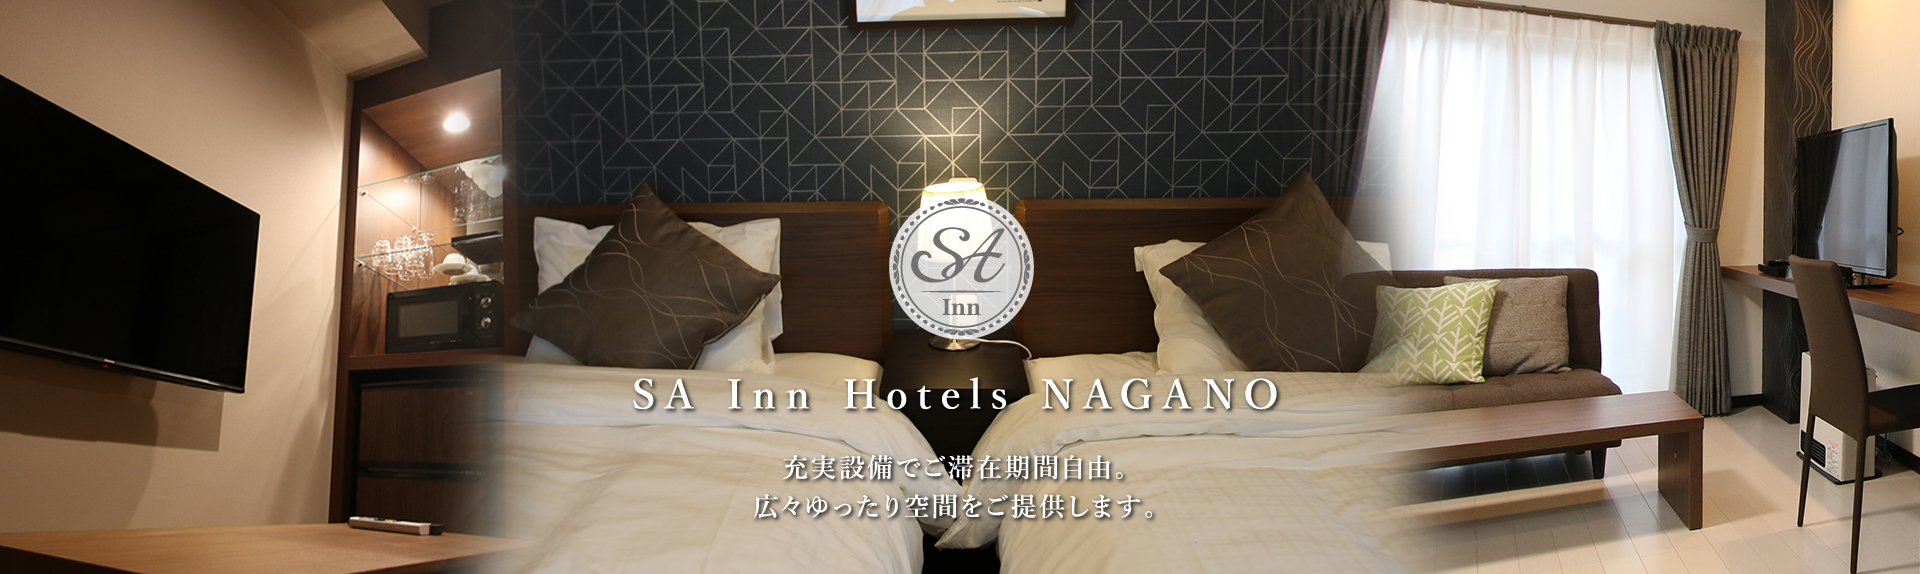 SA Inn Hotels